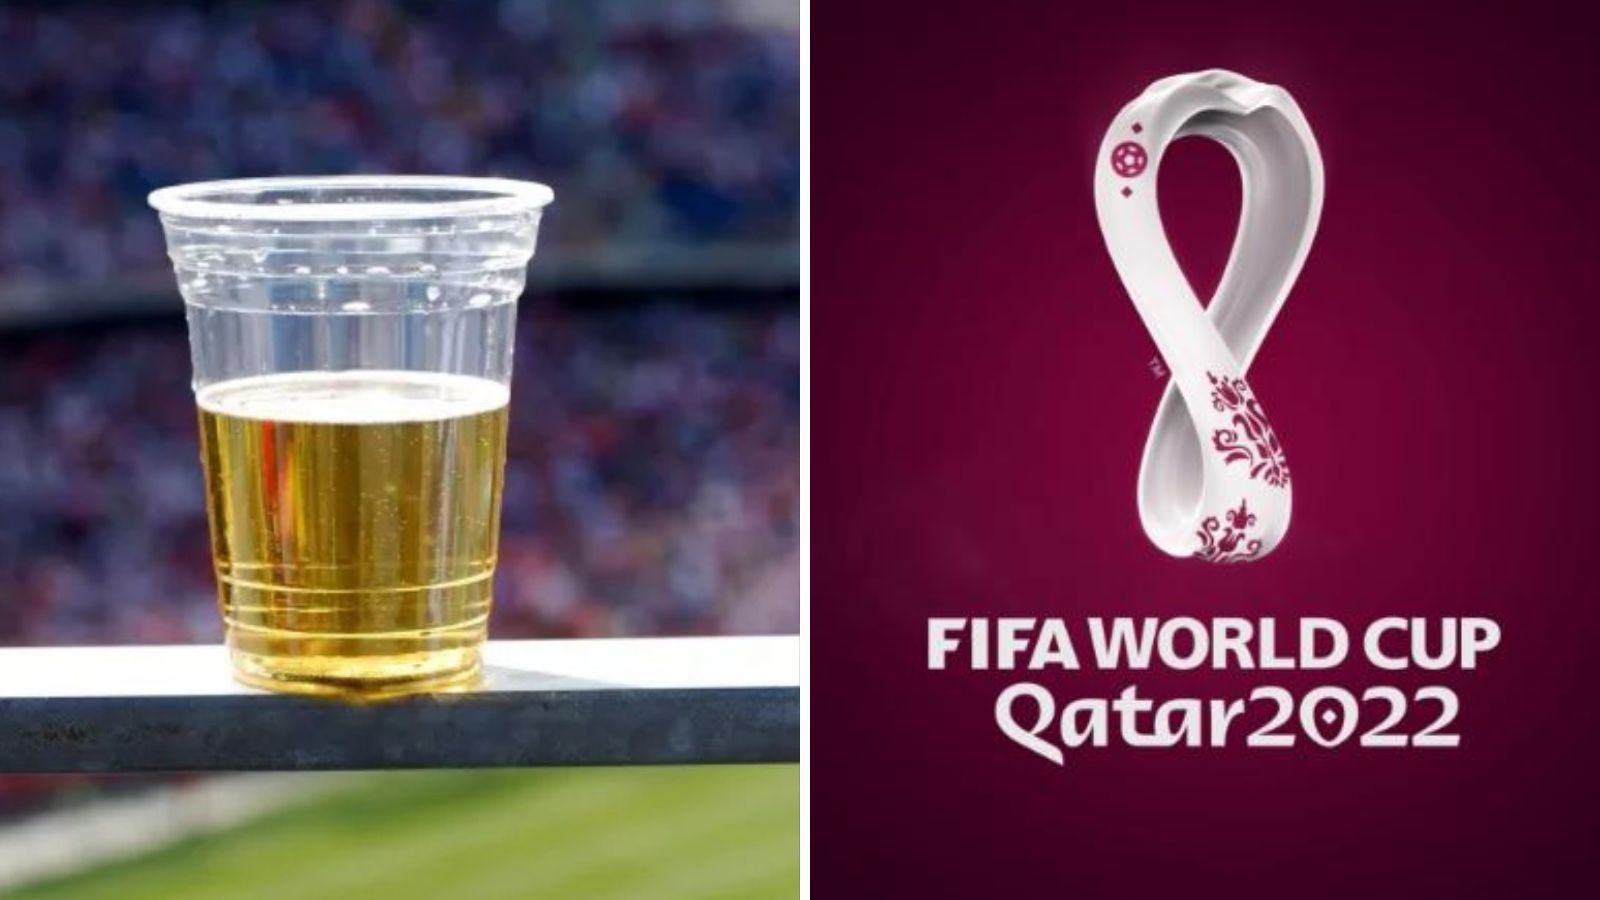 Qatar 2022 prohibe venta de alcohol copa del mundo